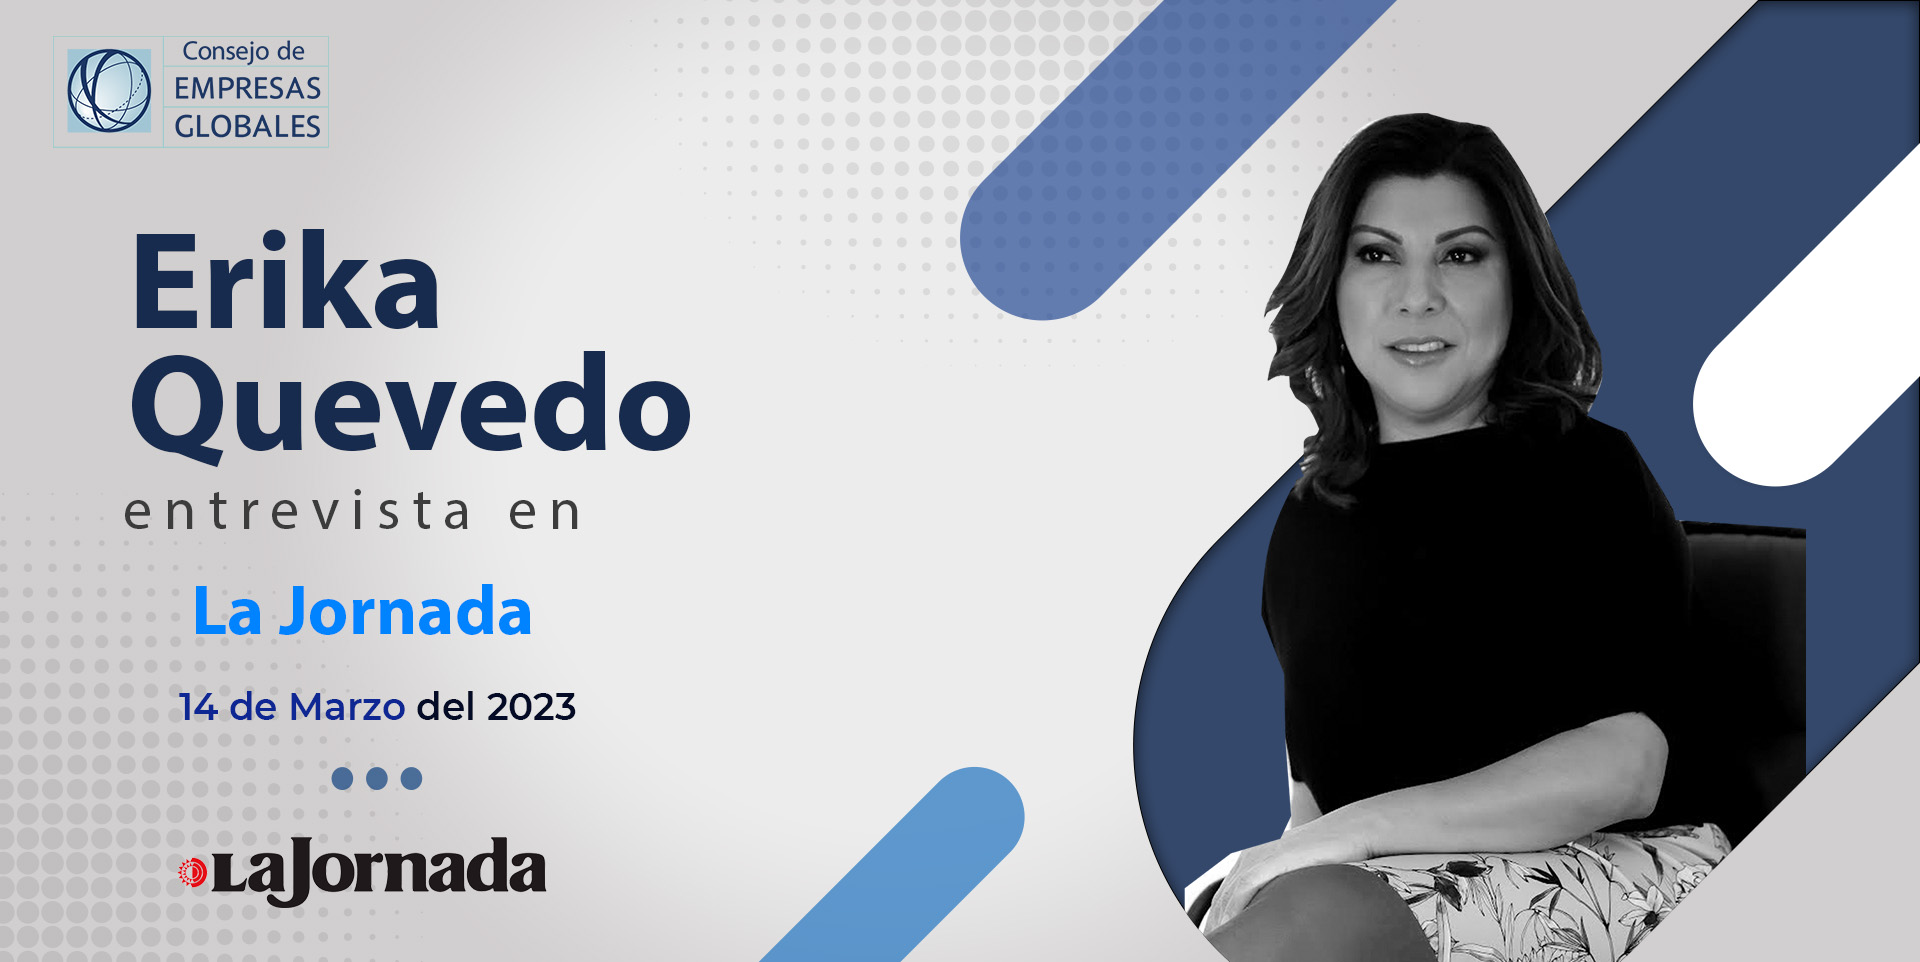 Erika Quevedo, directora general de nuestro Consejo en entrevista con La Jornada